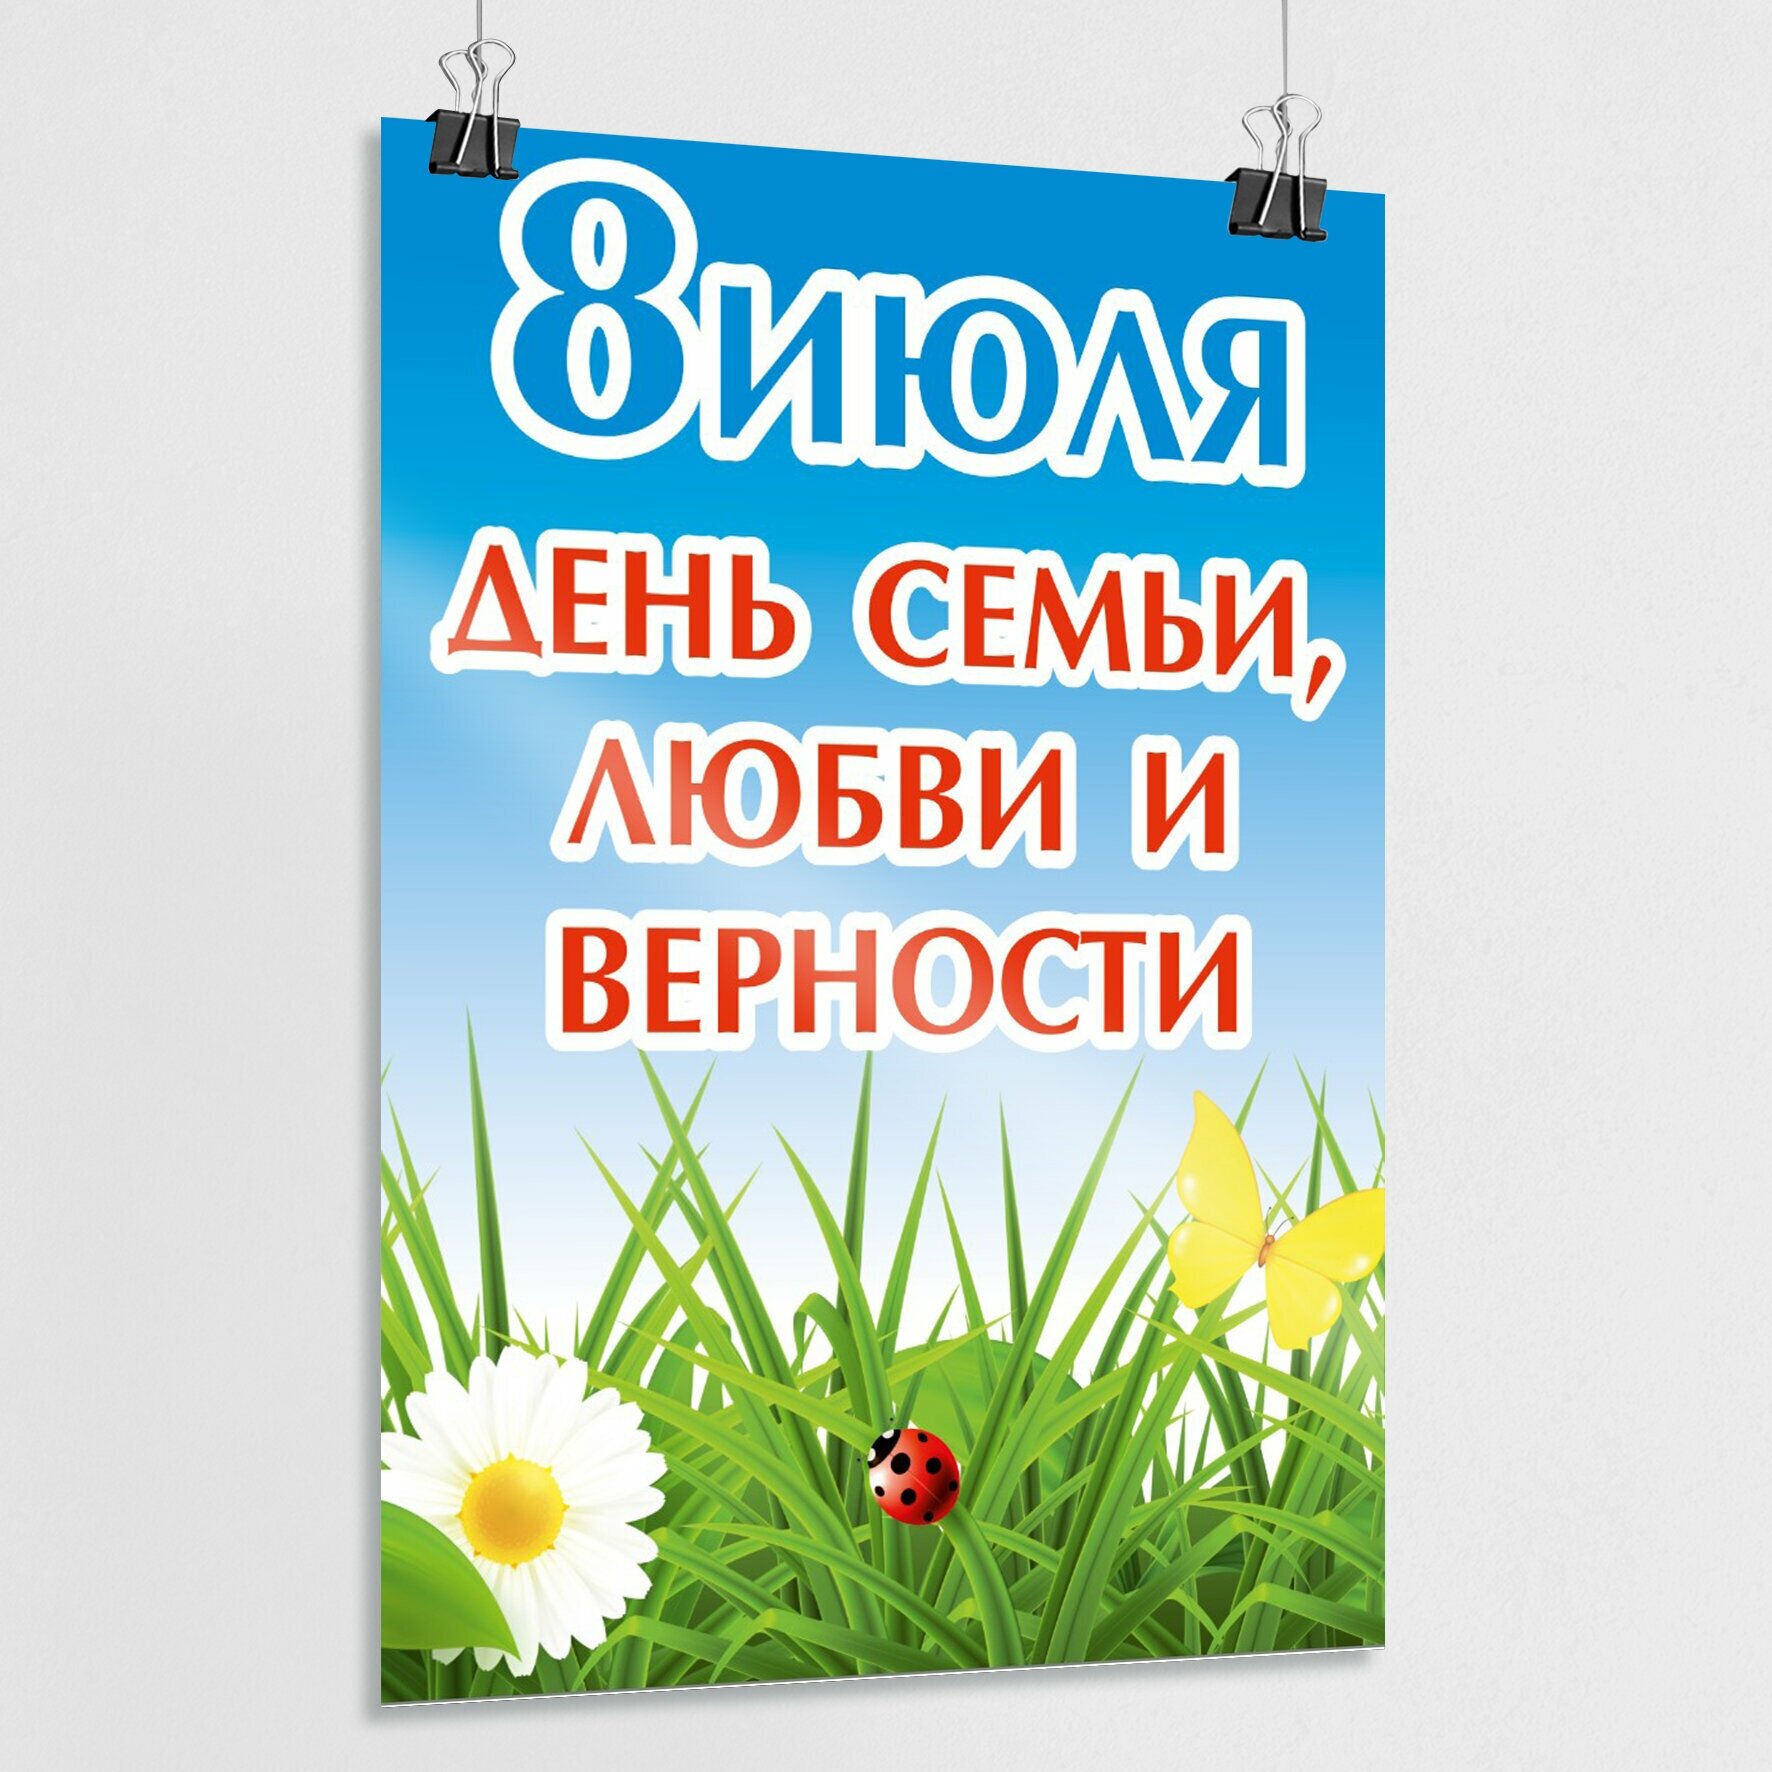 Плакат, постер на День семьи, любви и верности, 8 июля / А-2 (42x60 см.)